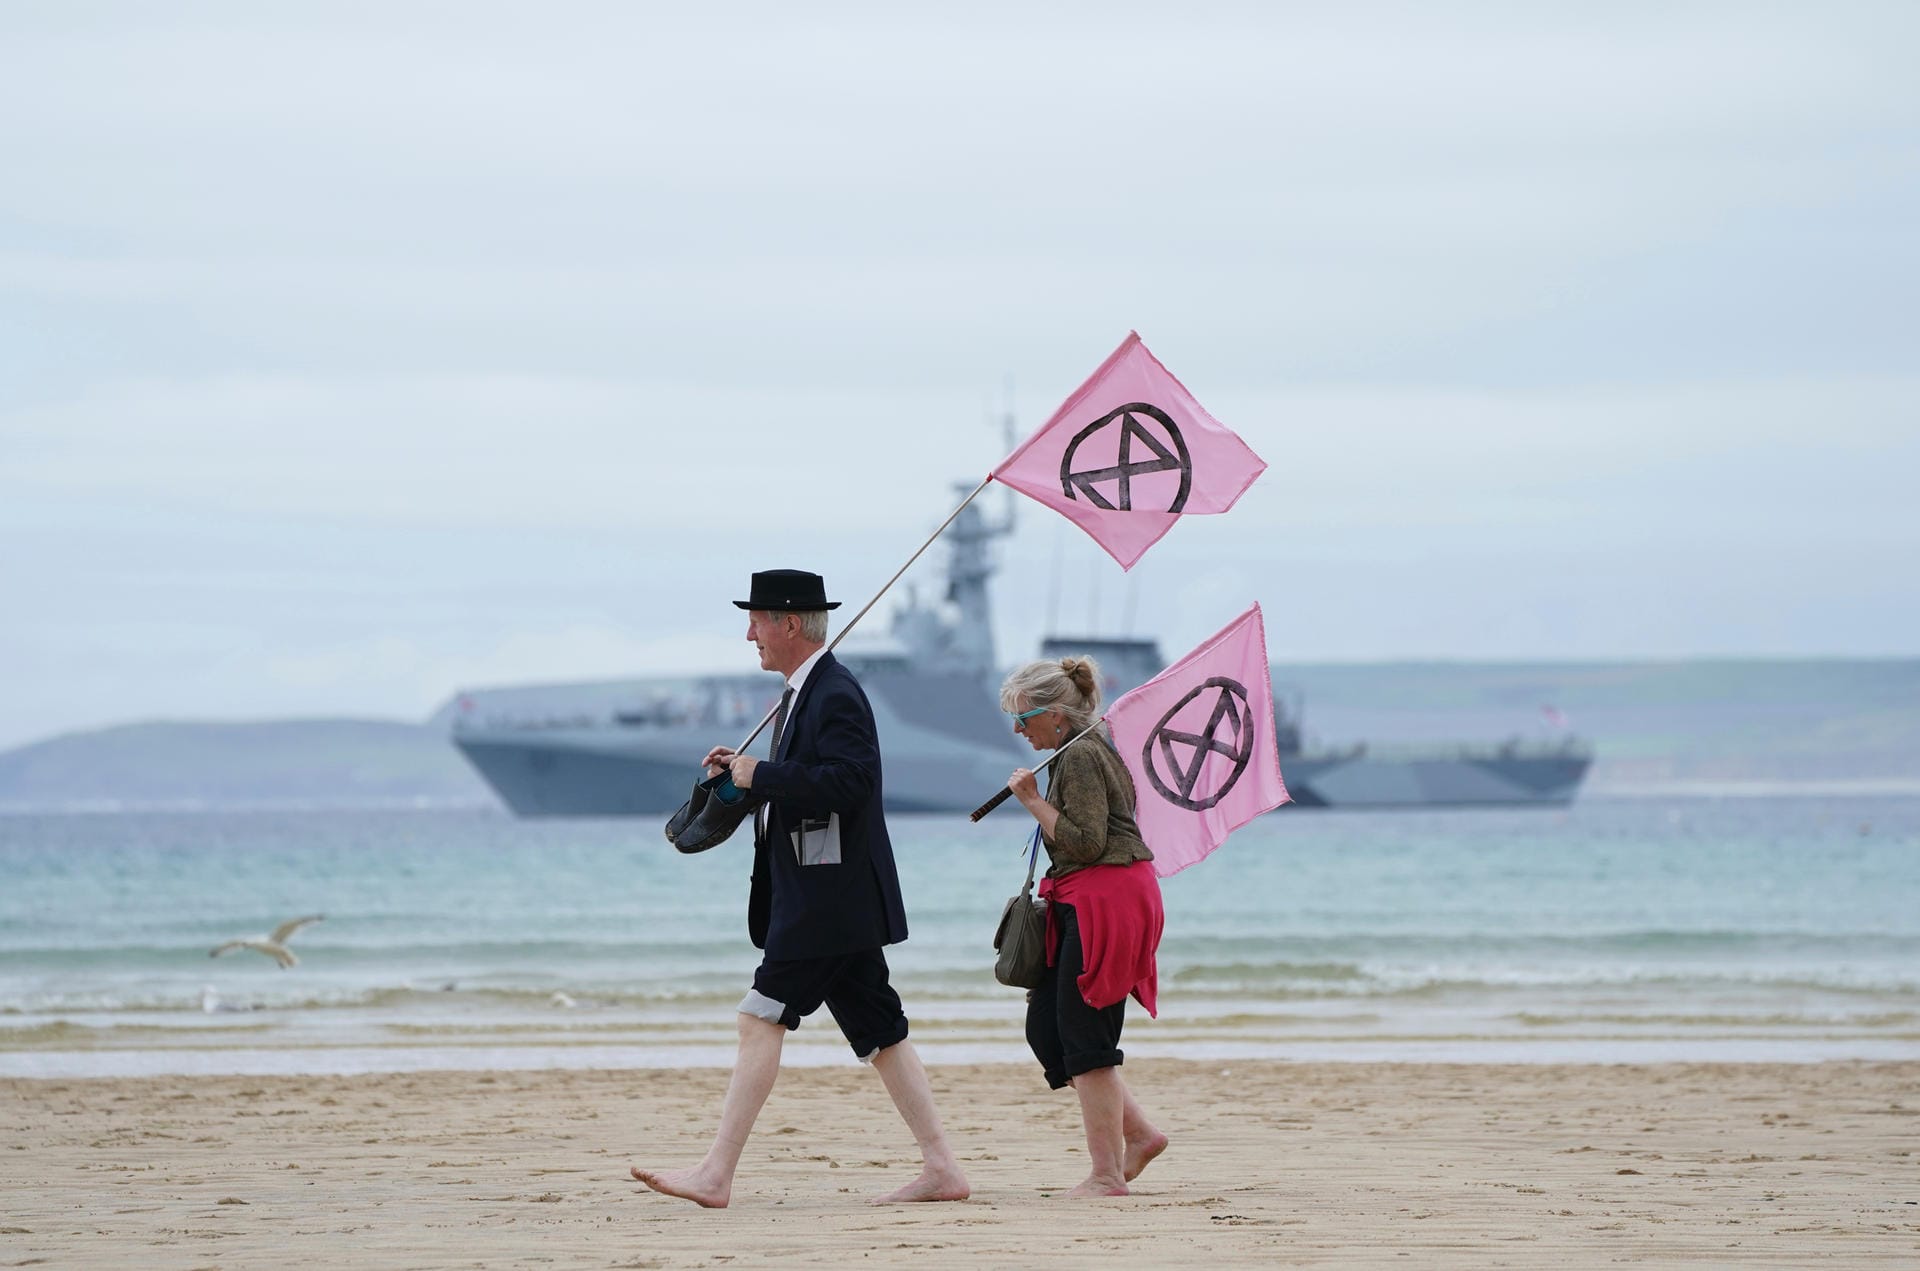 Am Strand von St Ives tragen Demonstranten zwei Fahnen mit dem Logo der Umweltbewegung Extinction Rebellion. Im Hintergrund liegt die HMS Tamar vor Anker, ein Kriegsschiff der britischen Marine. Auch der neueste Flugzeugträger der Royal Navy, die HMS Prince of Wales (nihct im Bild) gehört zum Sicherheitskonzept des G7-Gipfels in Cornwall.